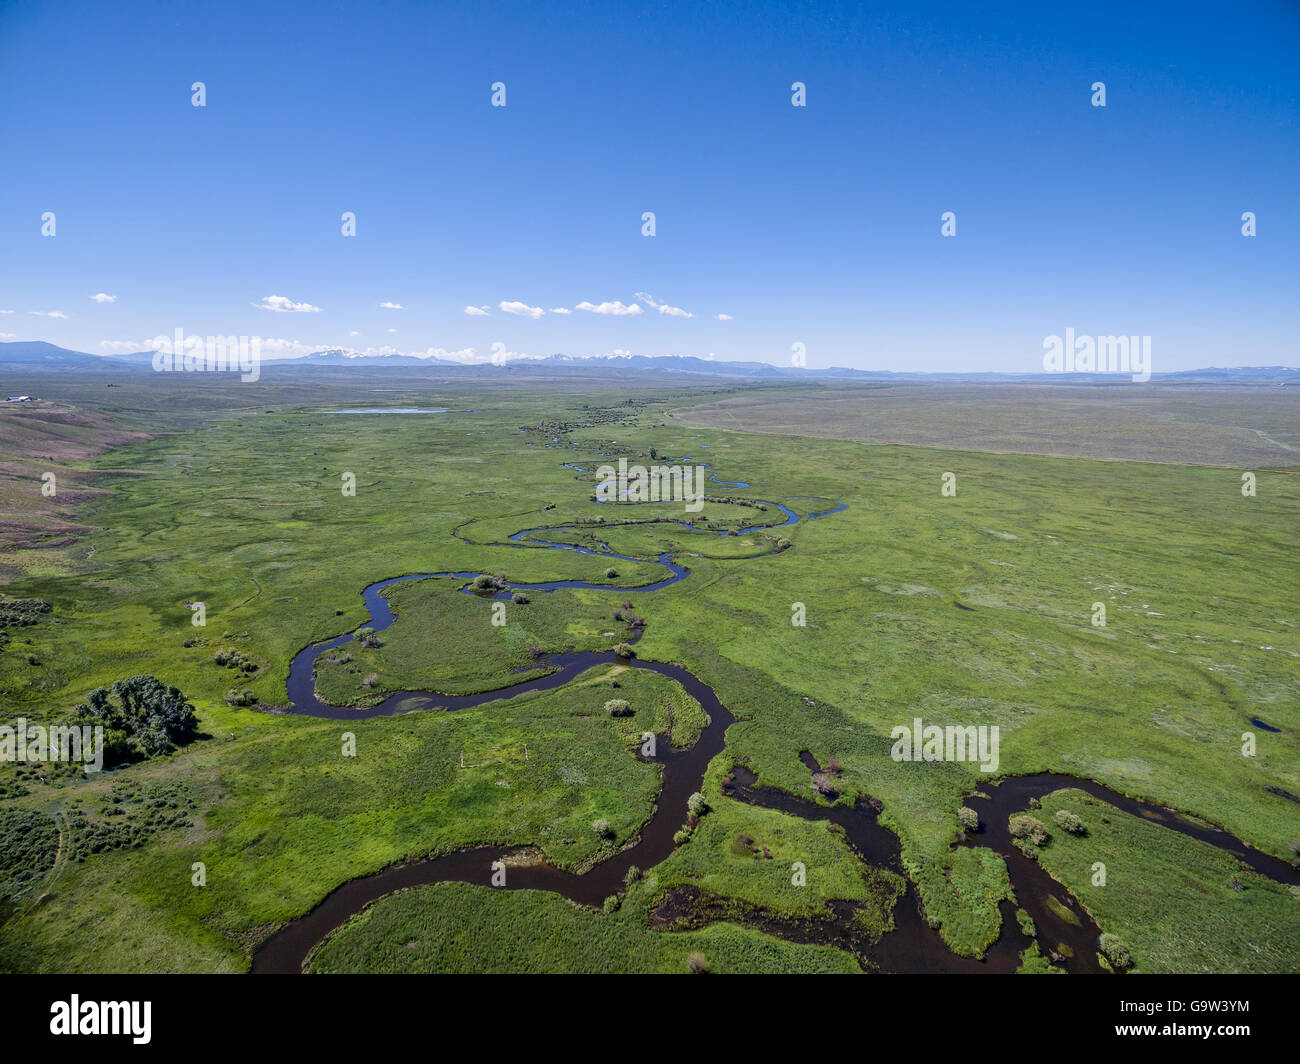 Illinois Fluß schlängelt sich durch Arapaho National Wildlife Refuge, North Park in der Nähe von Walden, Colorado, Frühsommer Luftbild Stockfoto